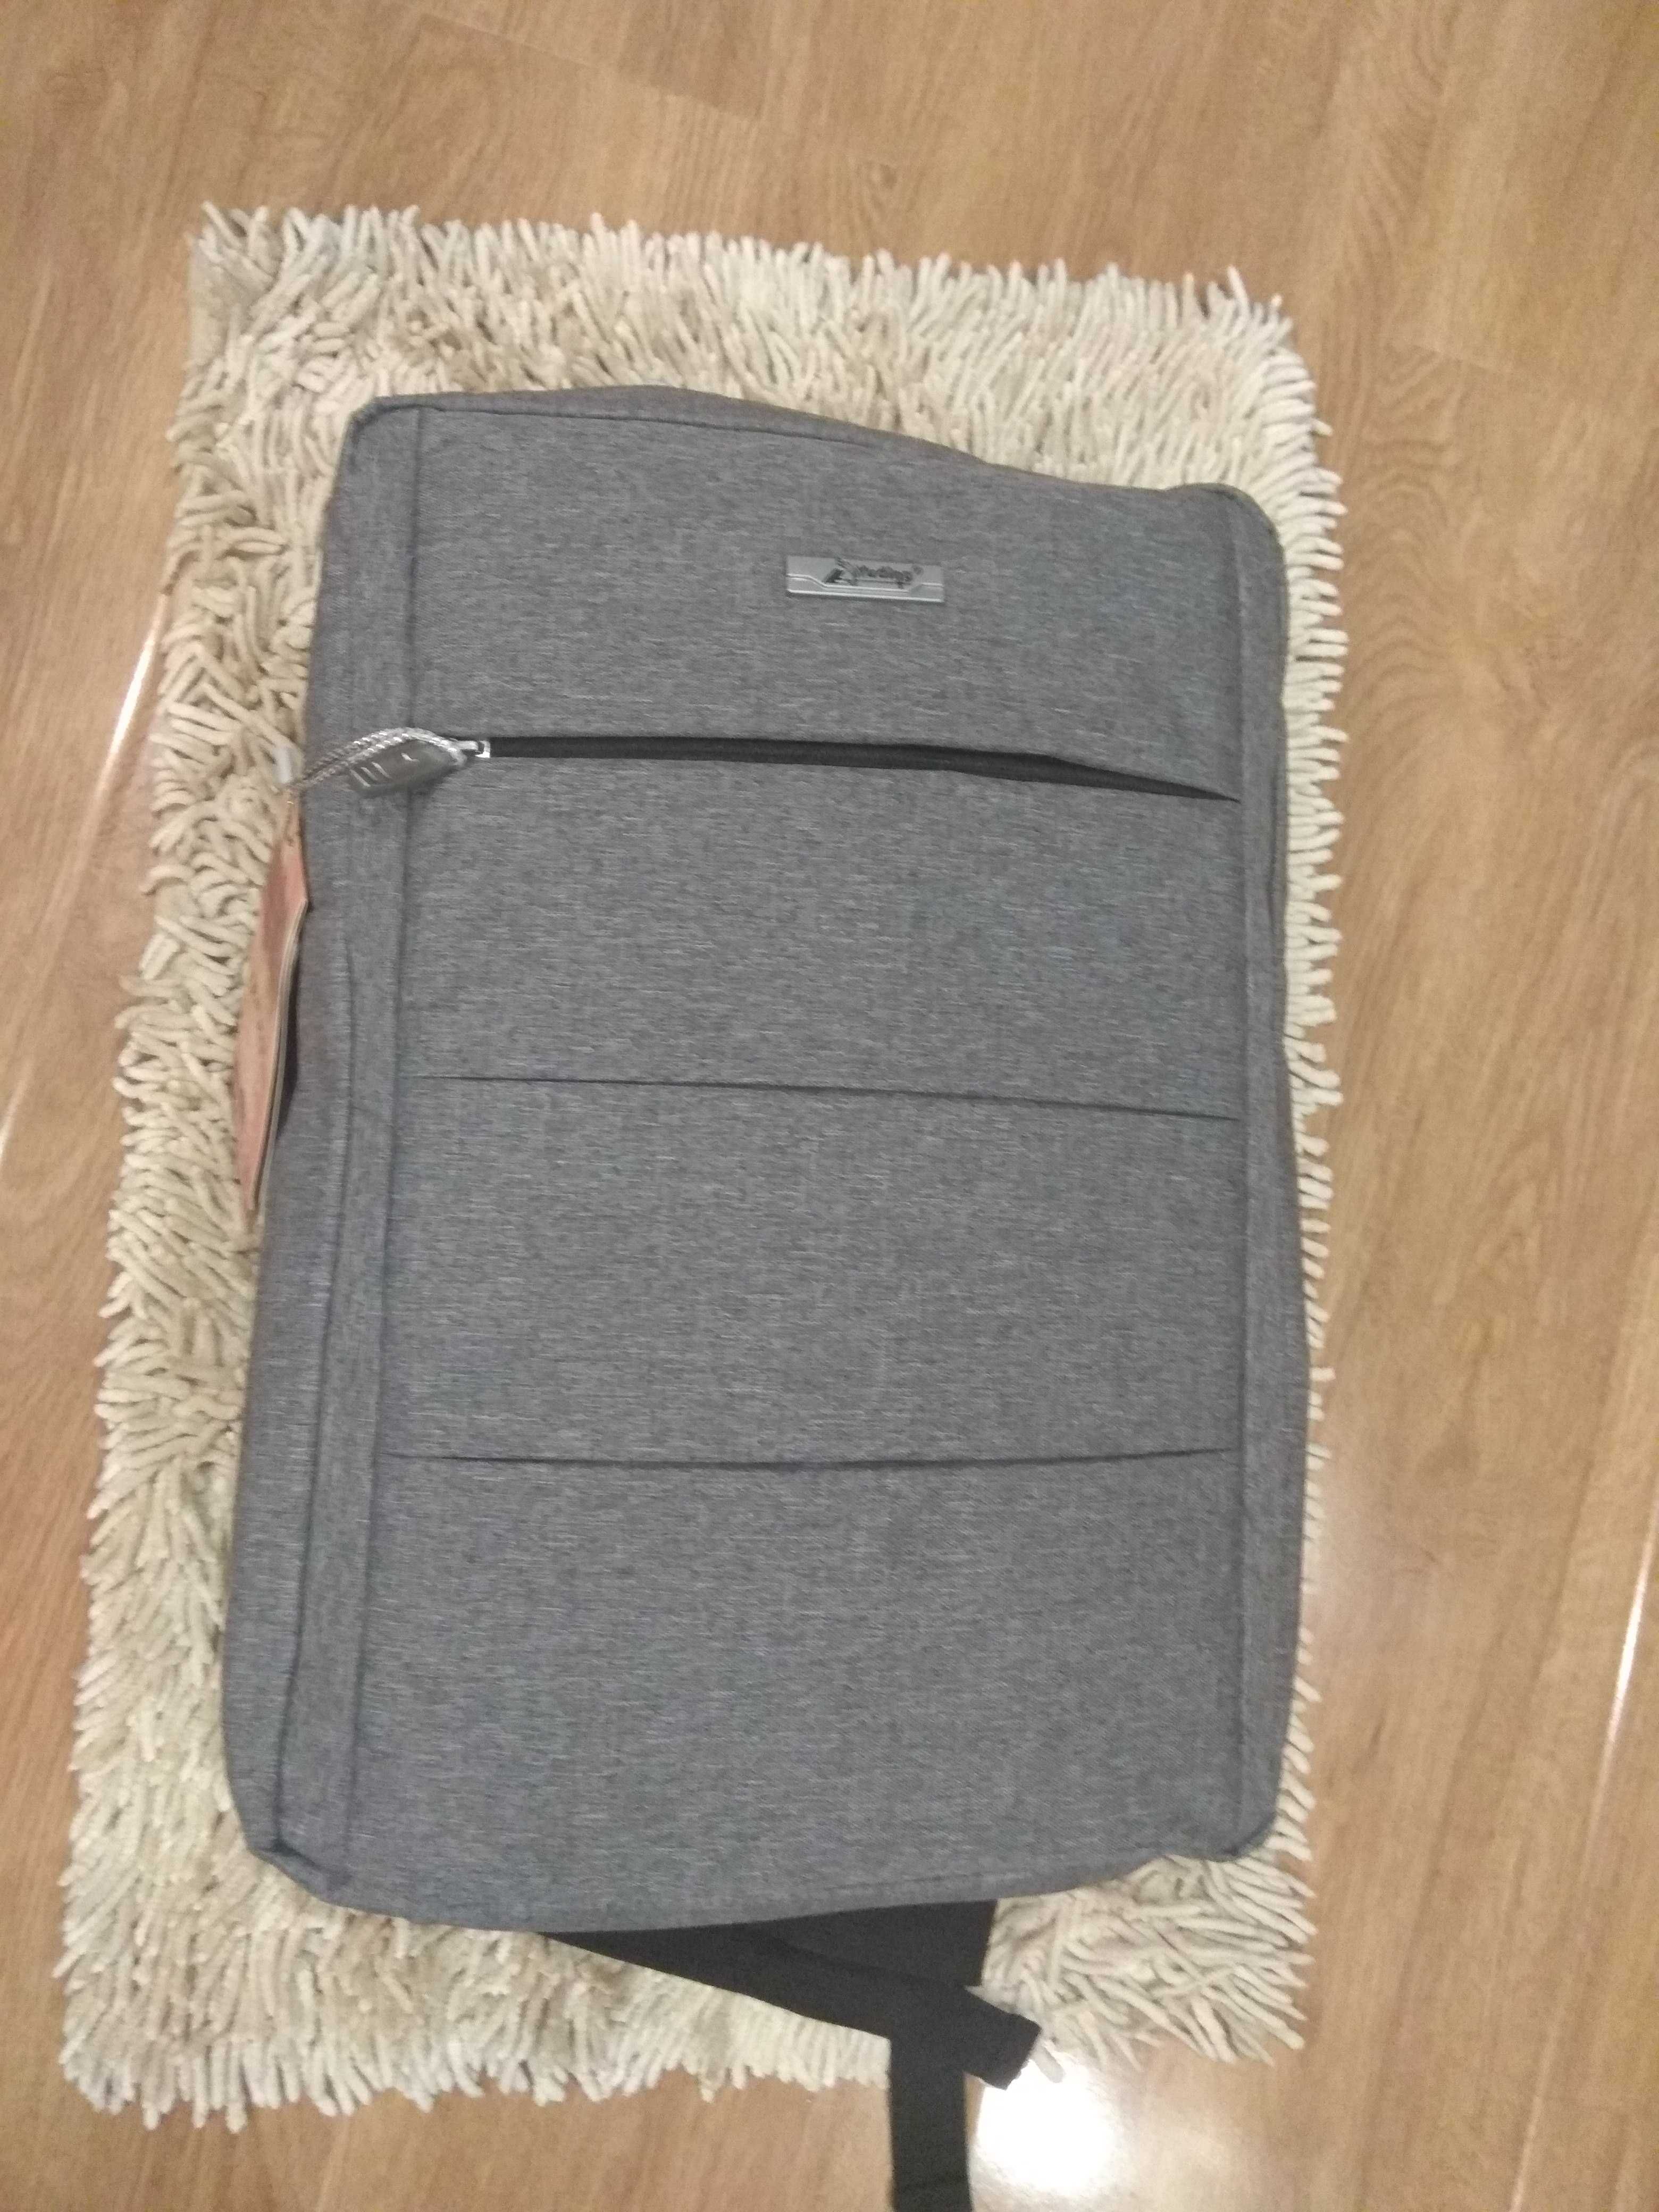 Новый отличный супер рюкзак под ноутбук до 15,6 дюймов двух цветов